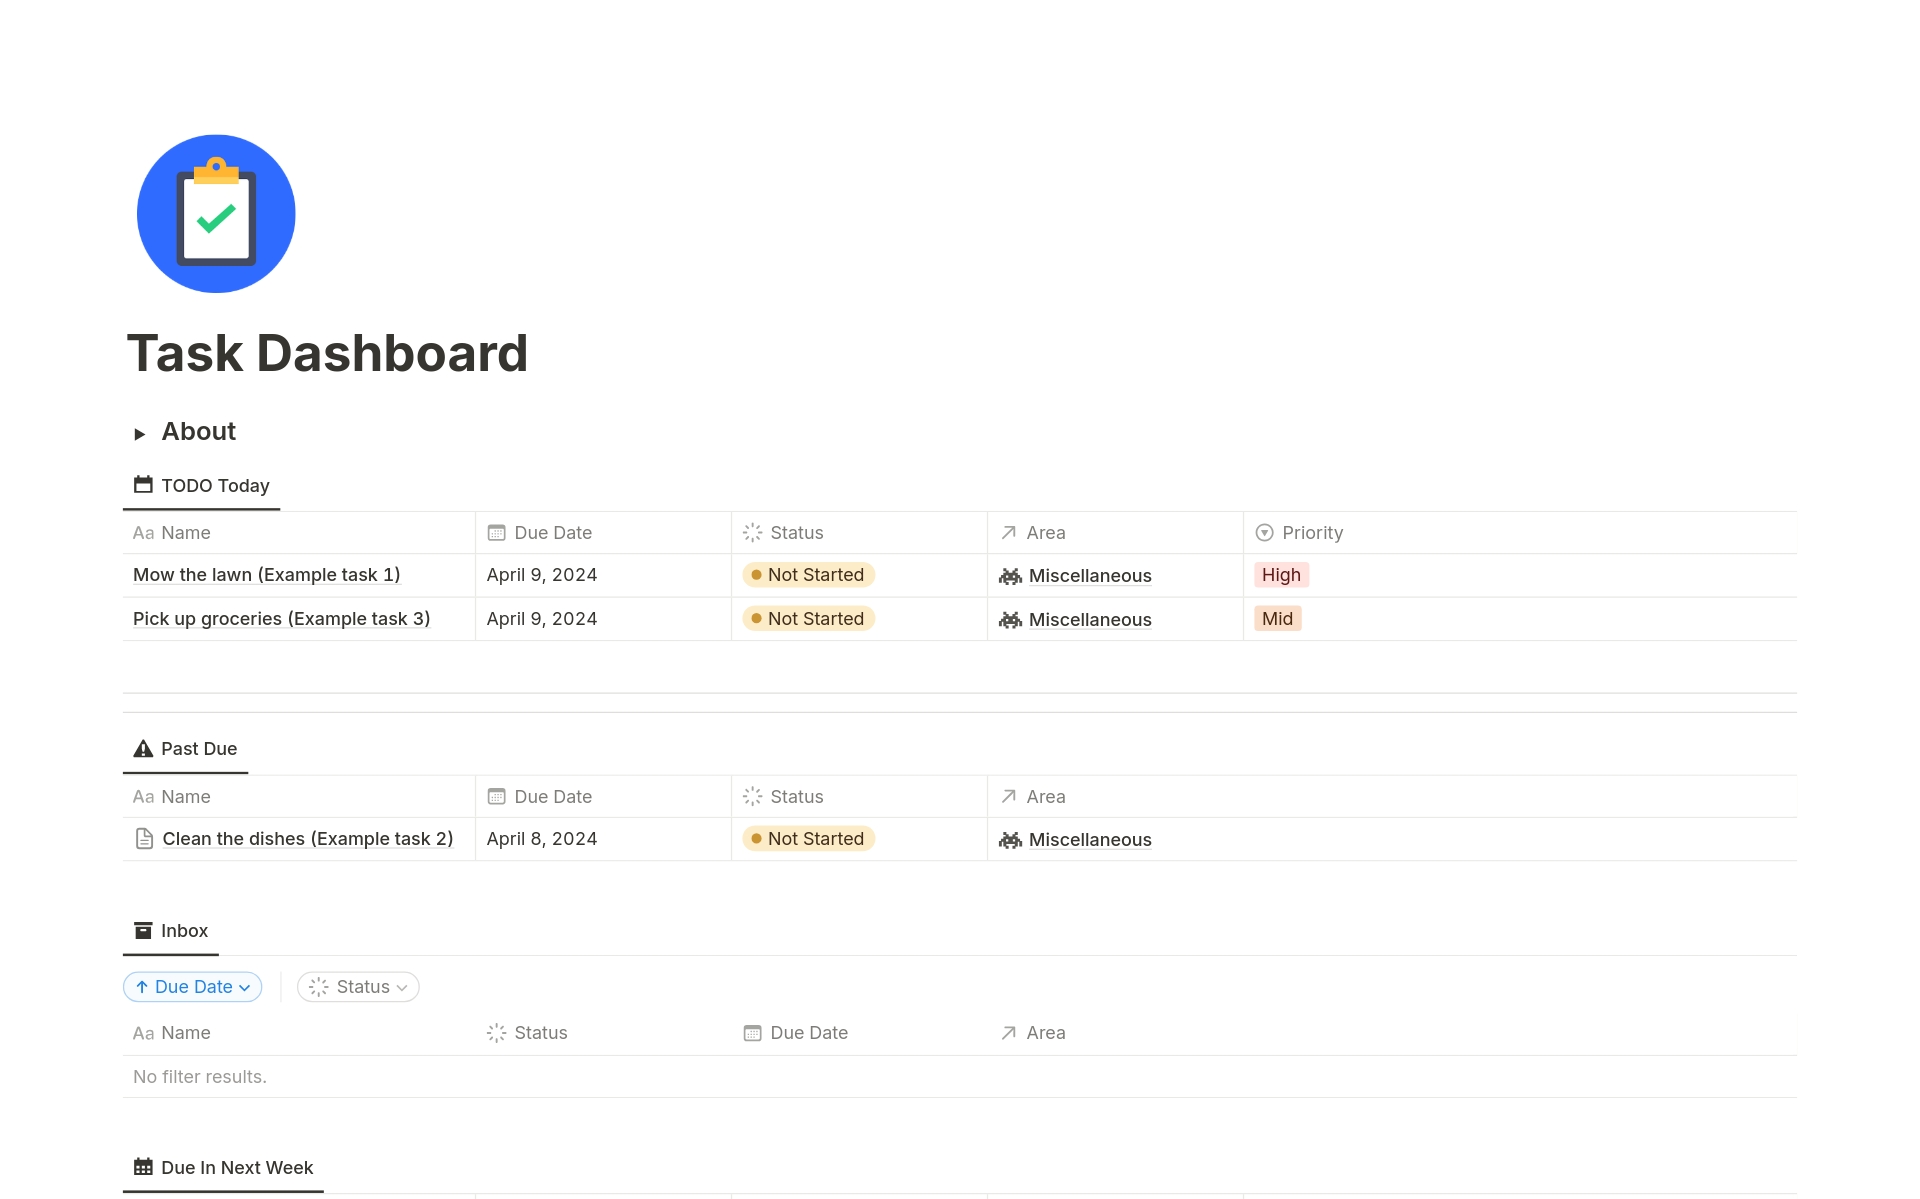 Uma prévia do modelo para Task Dashboard - Organize Your Life!